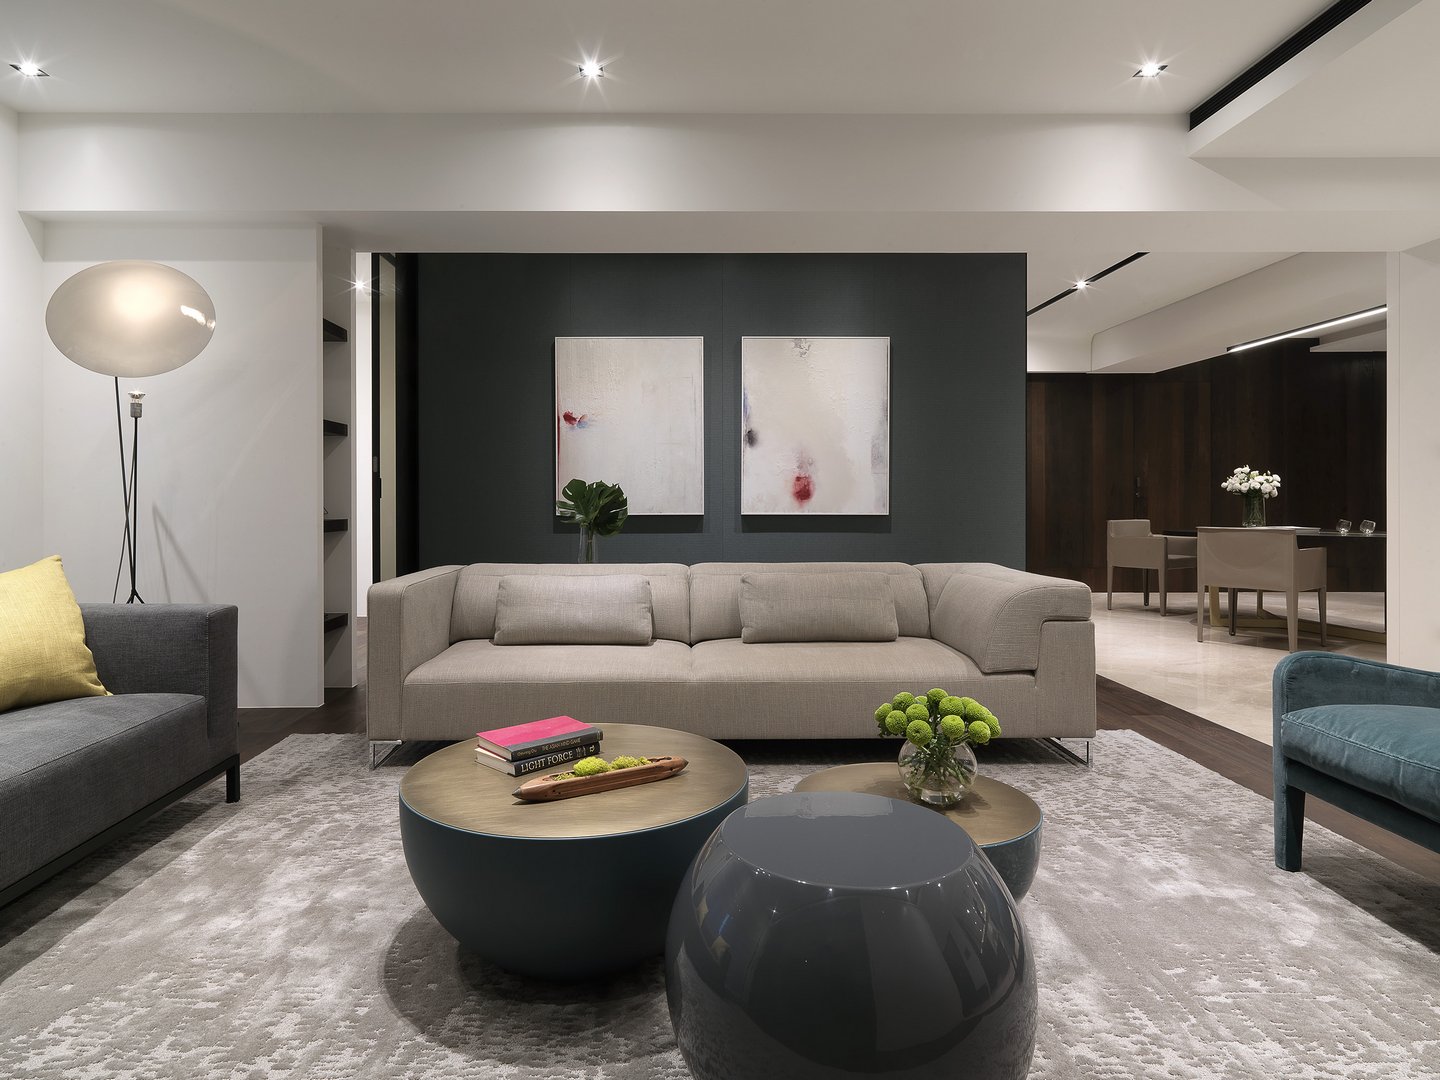 客厅空间层次深远，配色大气而富有格调，几何茶几使空间沉稳而富于质感。